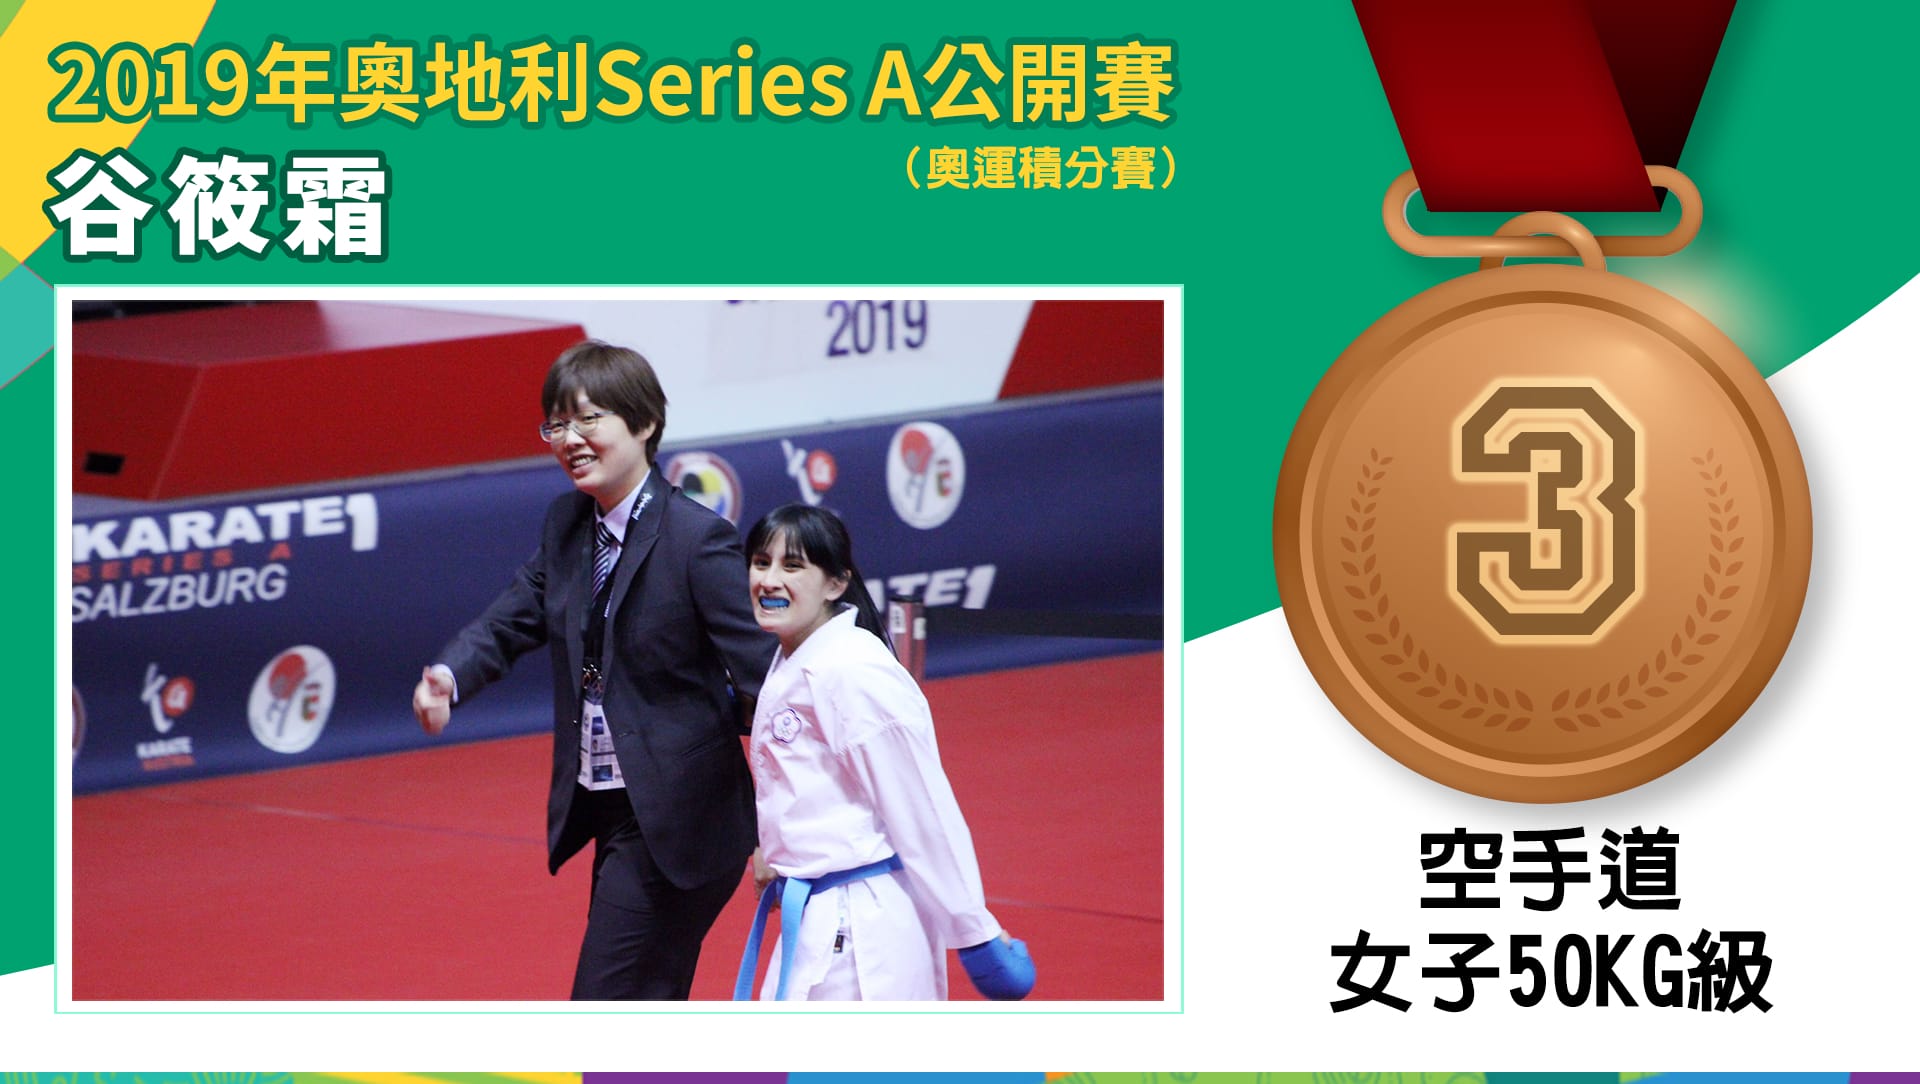 2019年奧地利Series A 空手道 公開賽  谷筱霜 - 銅牌 ( 女子-50kg級)